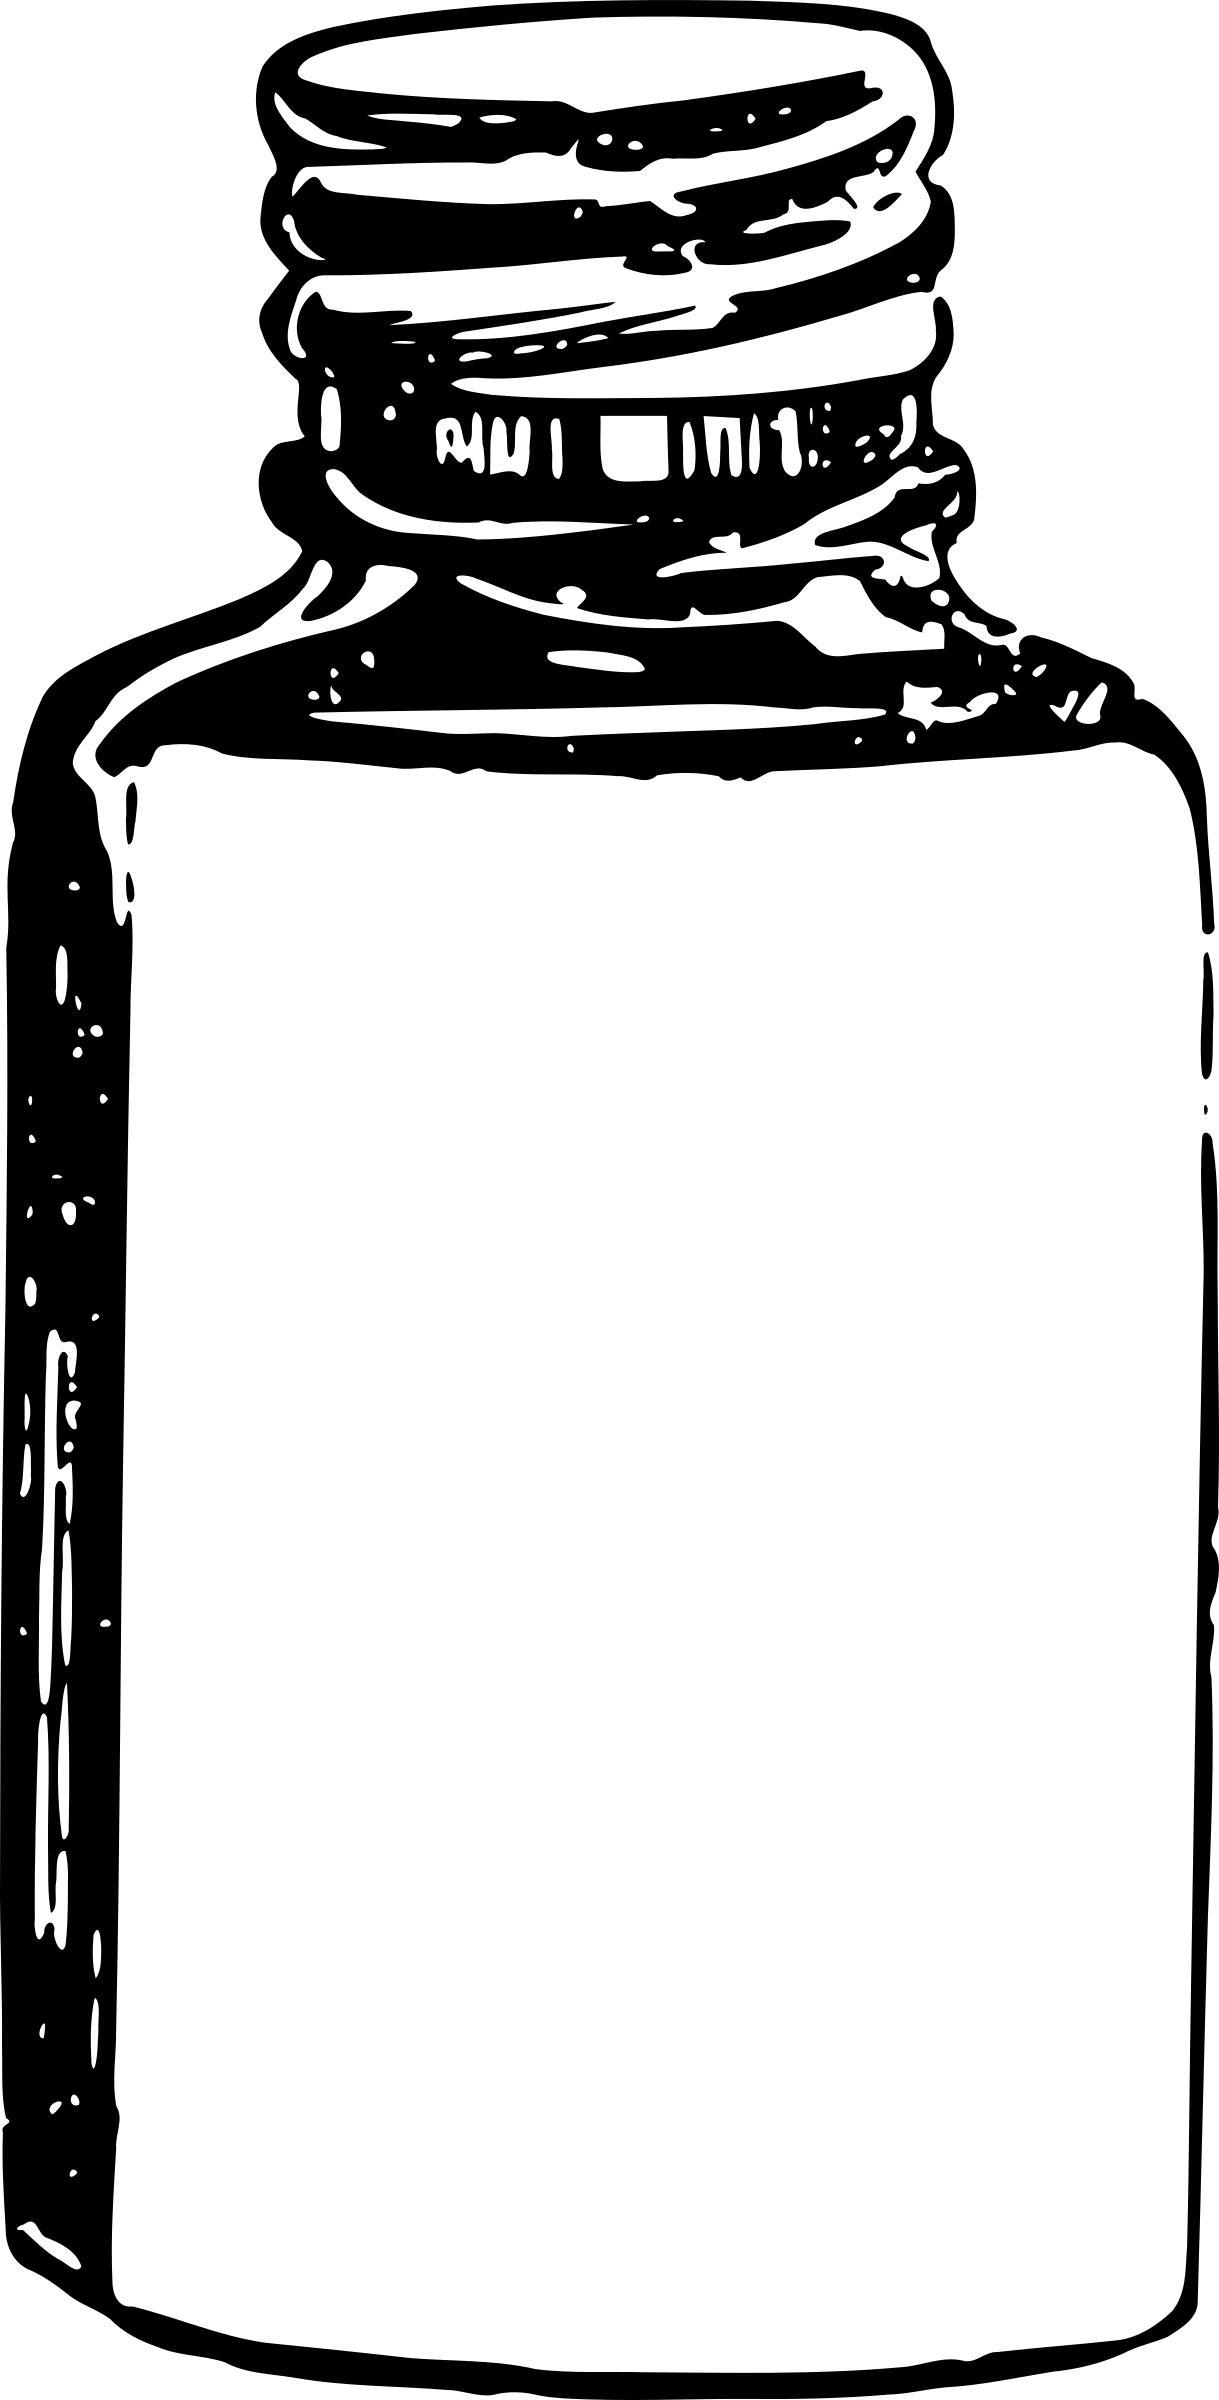 Pill Bottle Black And White Clipart - Outline Of Medicine Bottle (1219x2400)